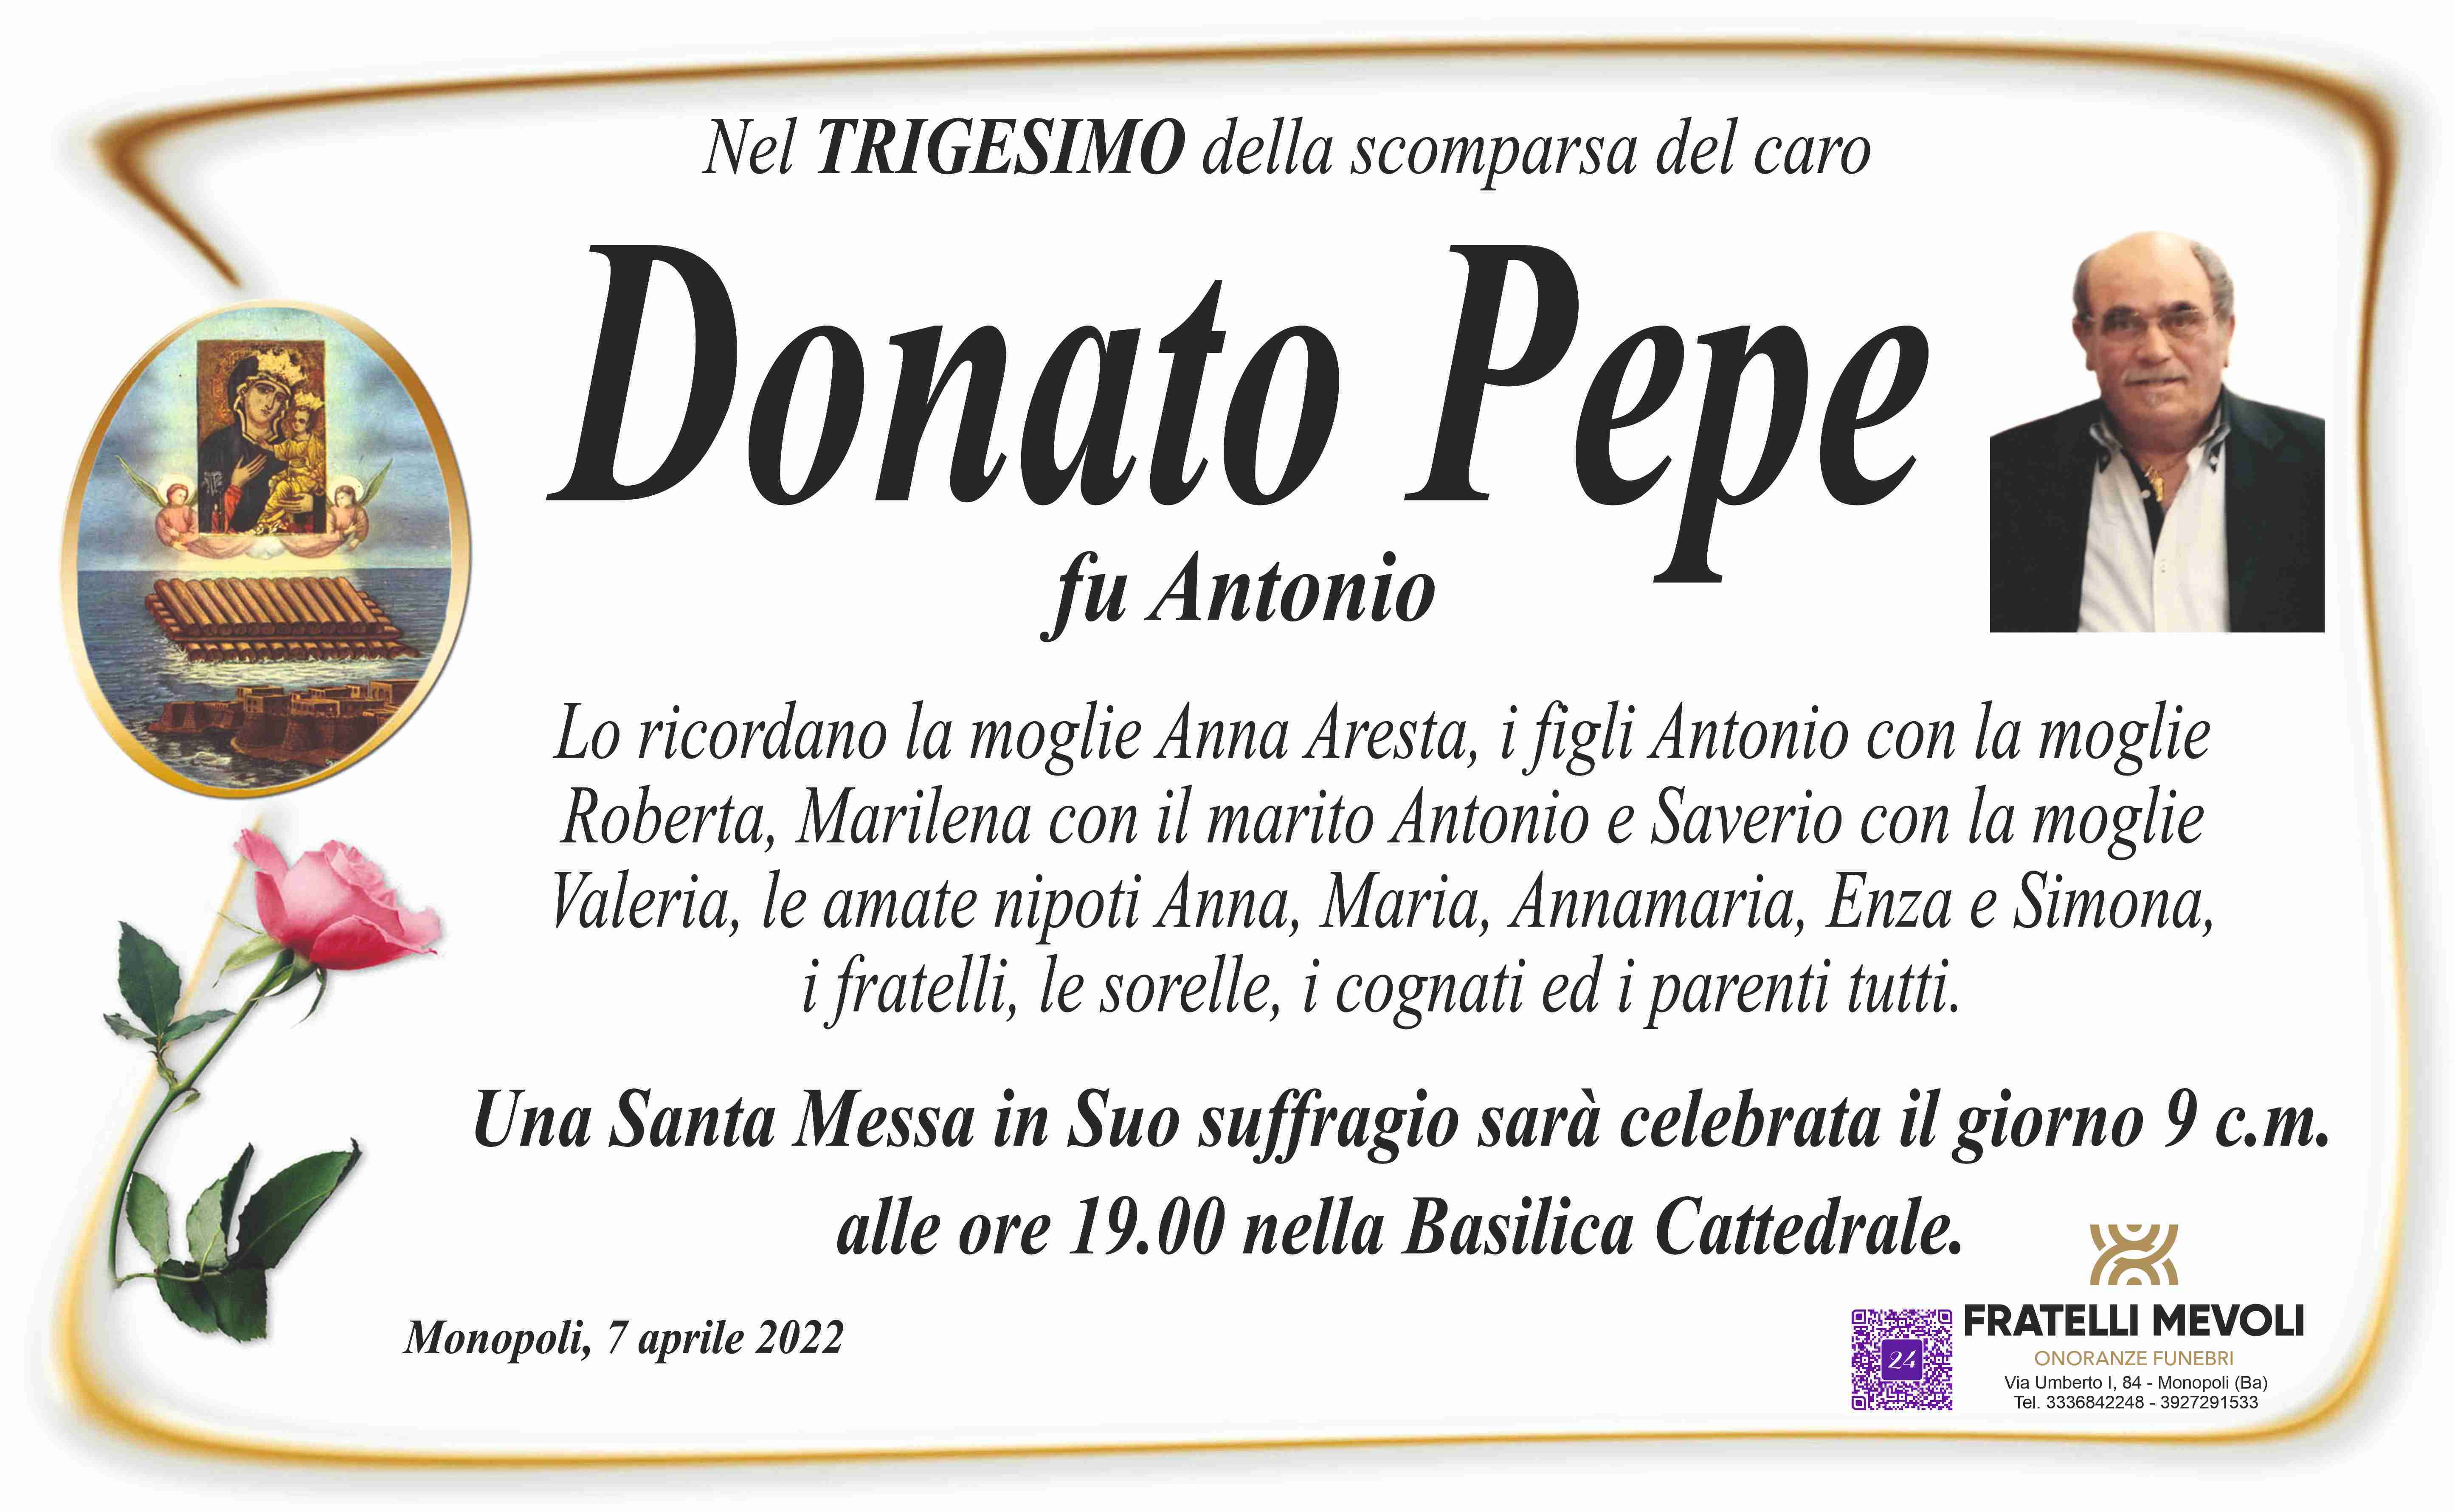 Donato Pepe